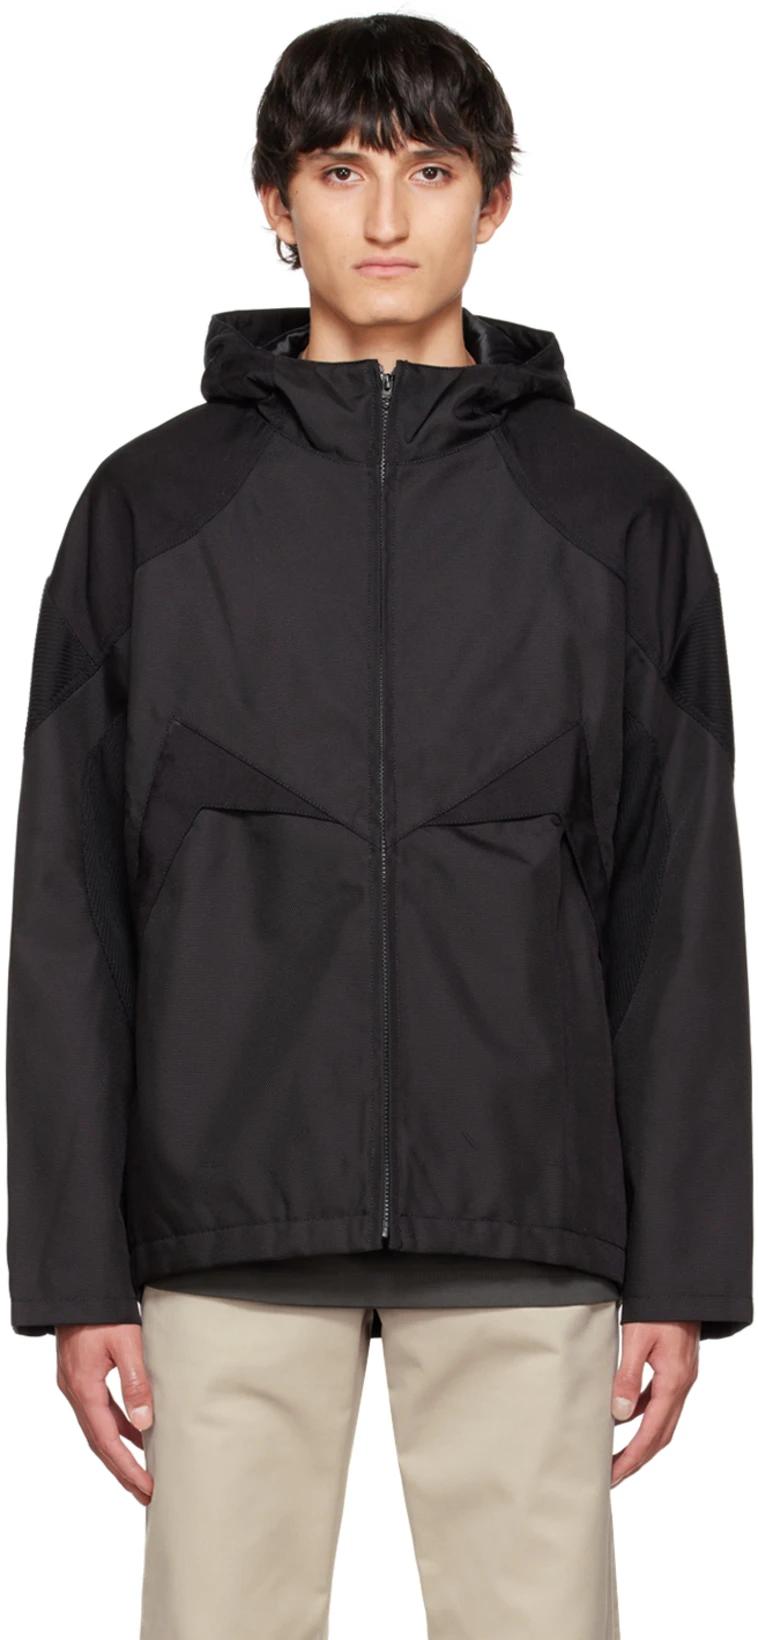 Black Paneled Jacket by AFFXWRKS